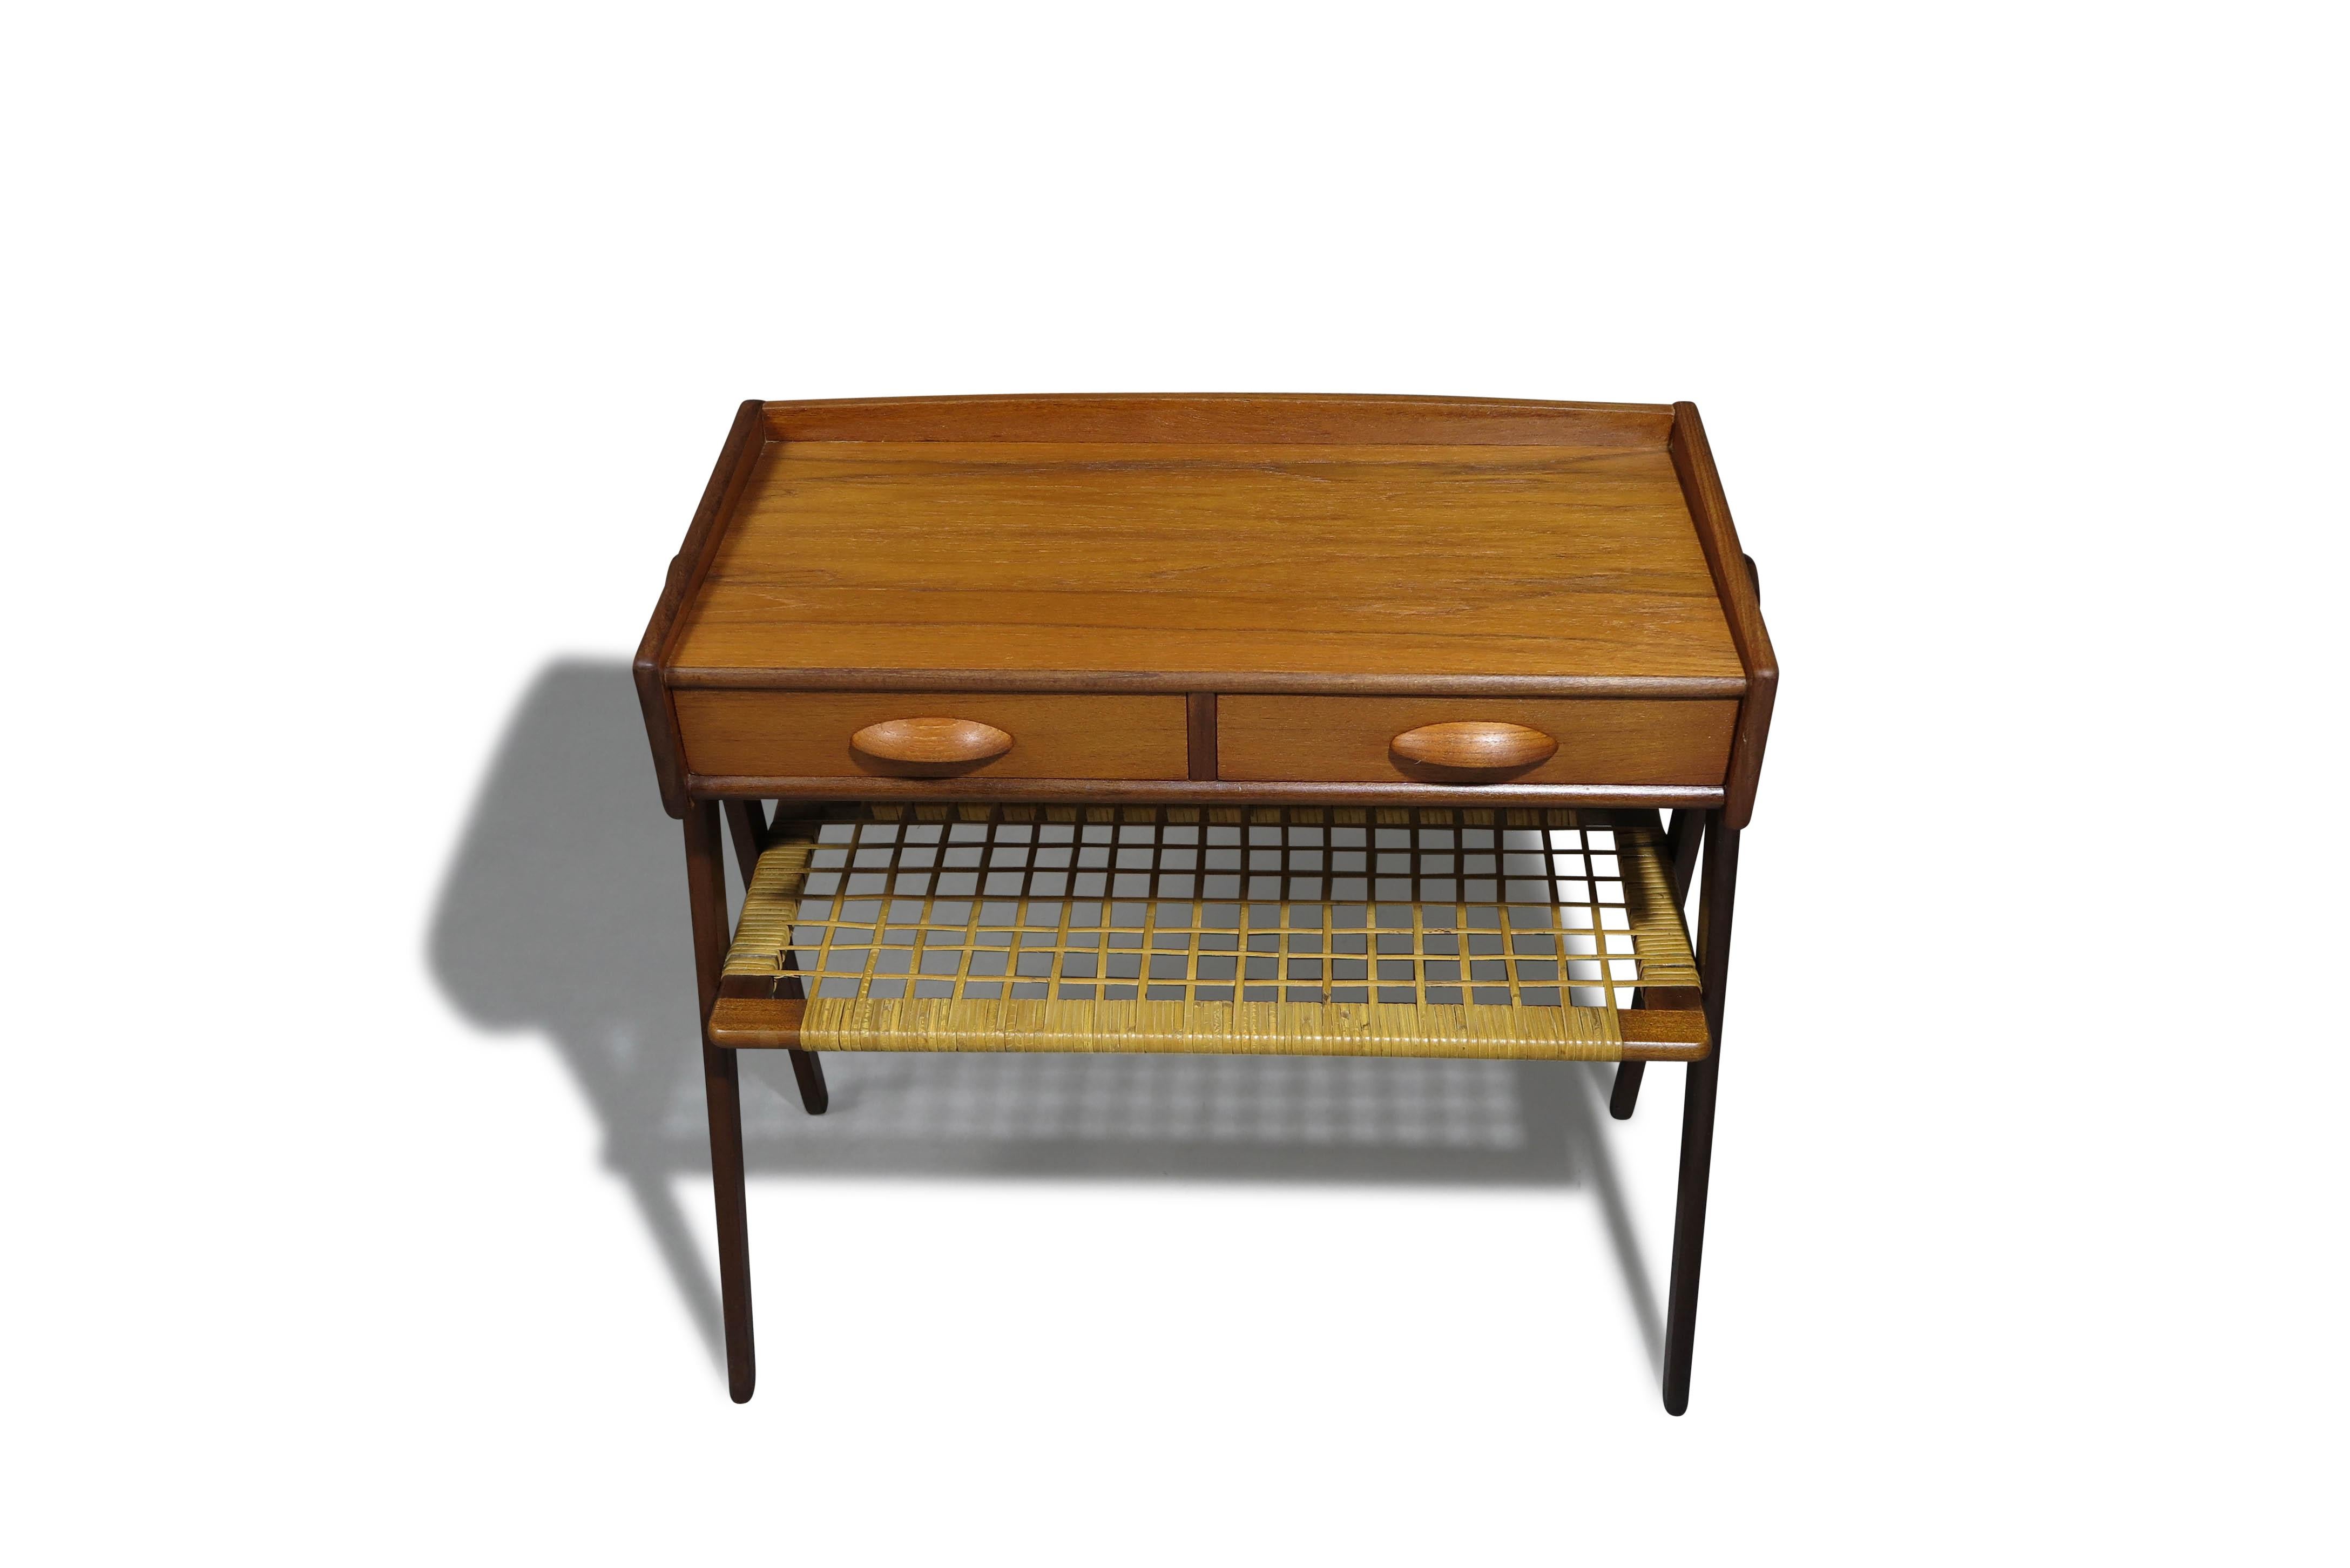 Table d'appoint danoise en teck du milieu du siècle, conçue par Søren Rasmussen, Danemark, vers les années 1960. Fabriqué en teck, il comporte deux tiroirs avec des poignées sculptées et une étagère en rotin tressé. Le meuble repose sur des pieds en